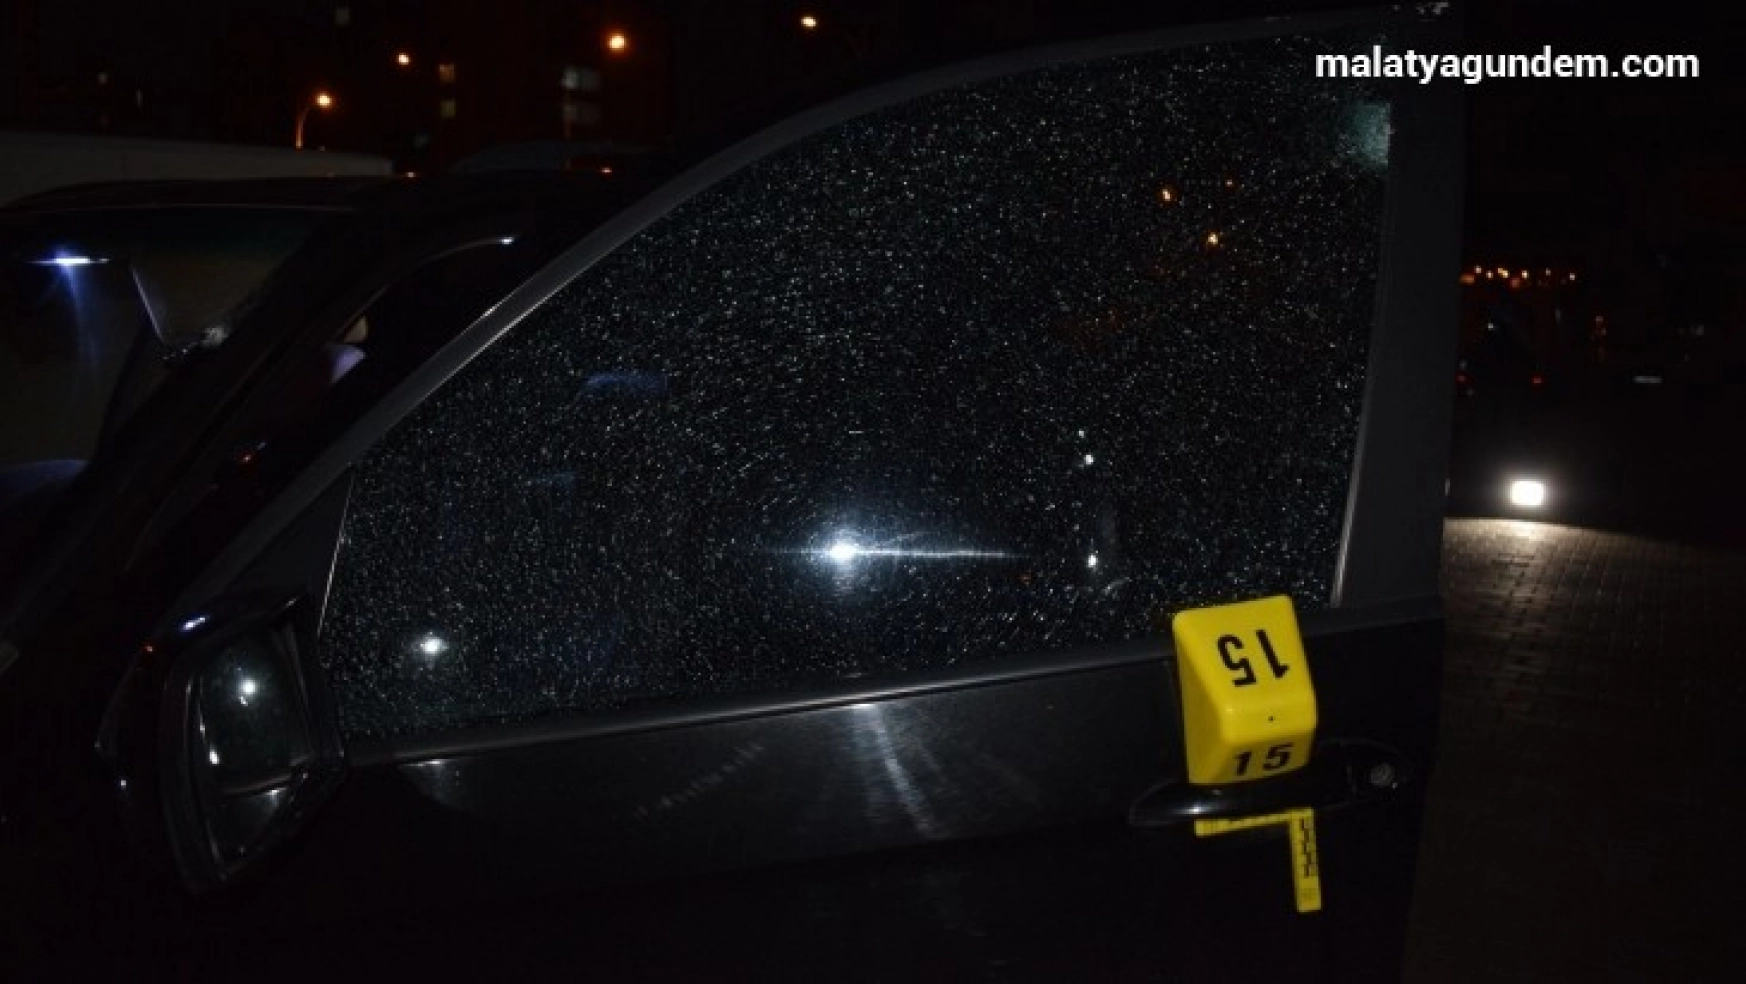 Malatya'da iki ayrı olayda 1 kişi yaralandı, çok sayıda araç da isabet aldı